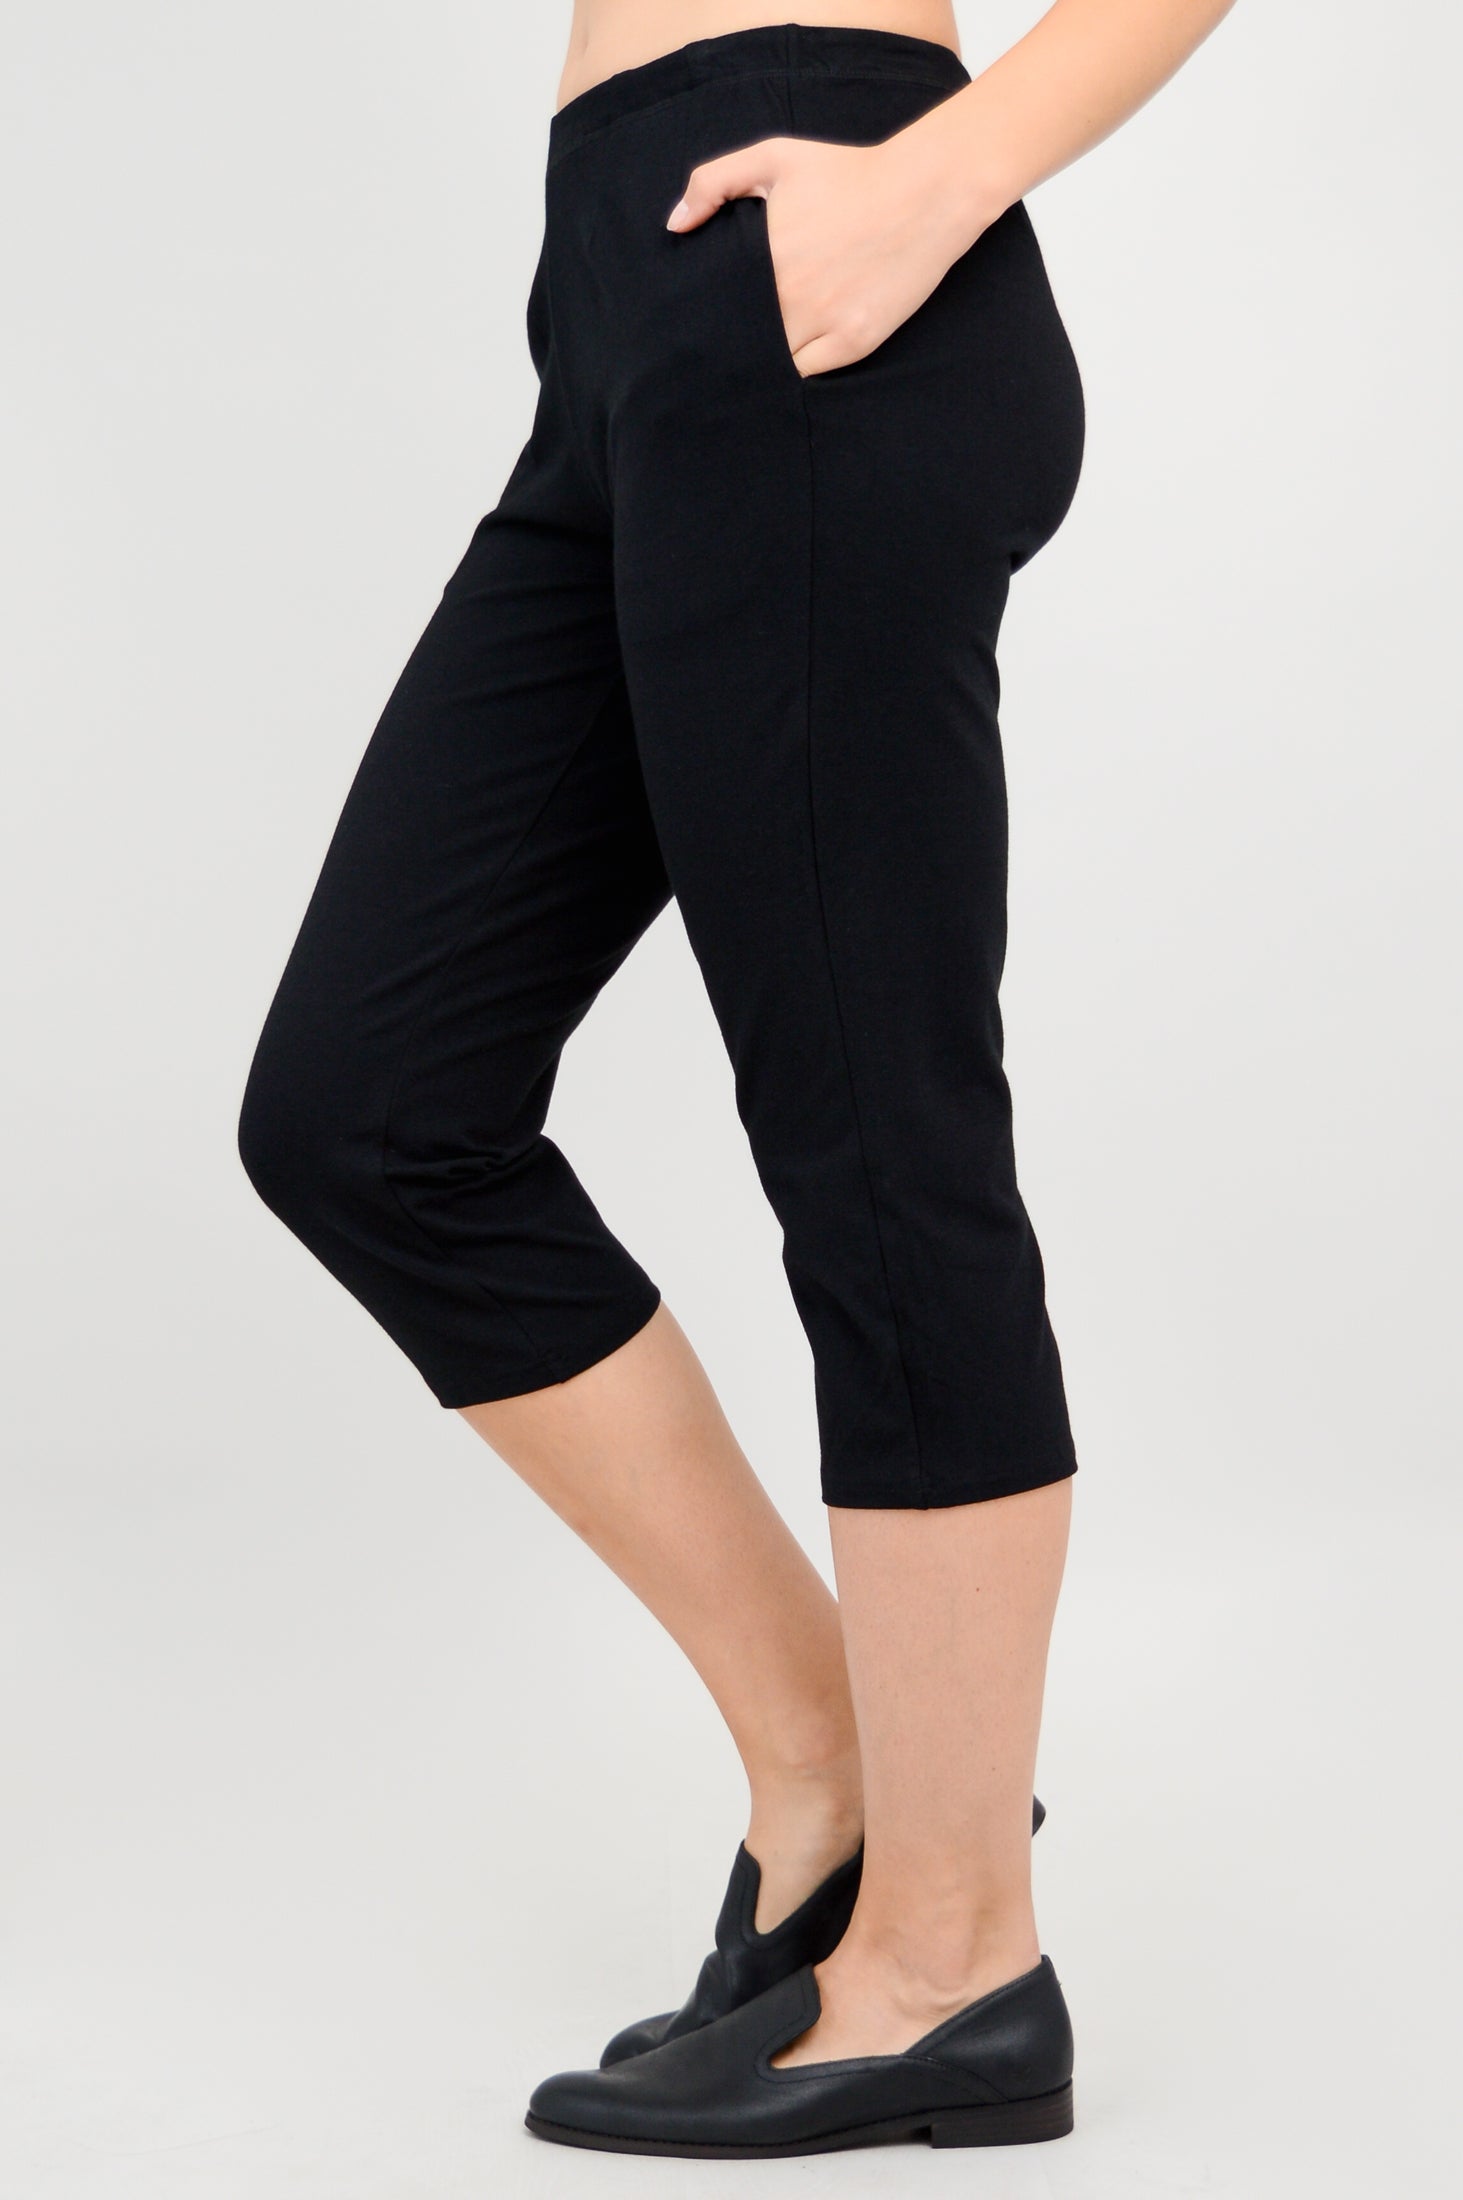 ZUMBA Wear Women's Capri Pants Bold Black/blue Stretch Capri Pants